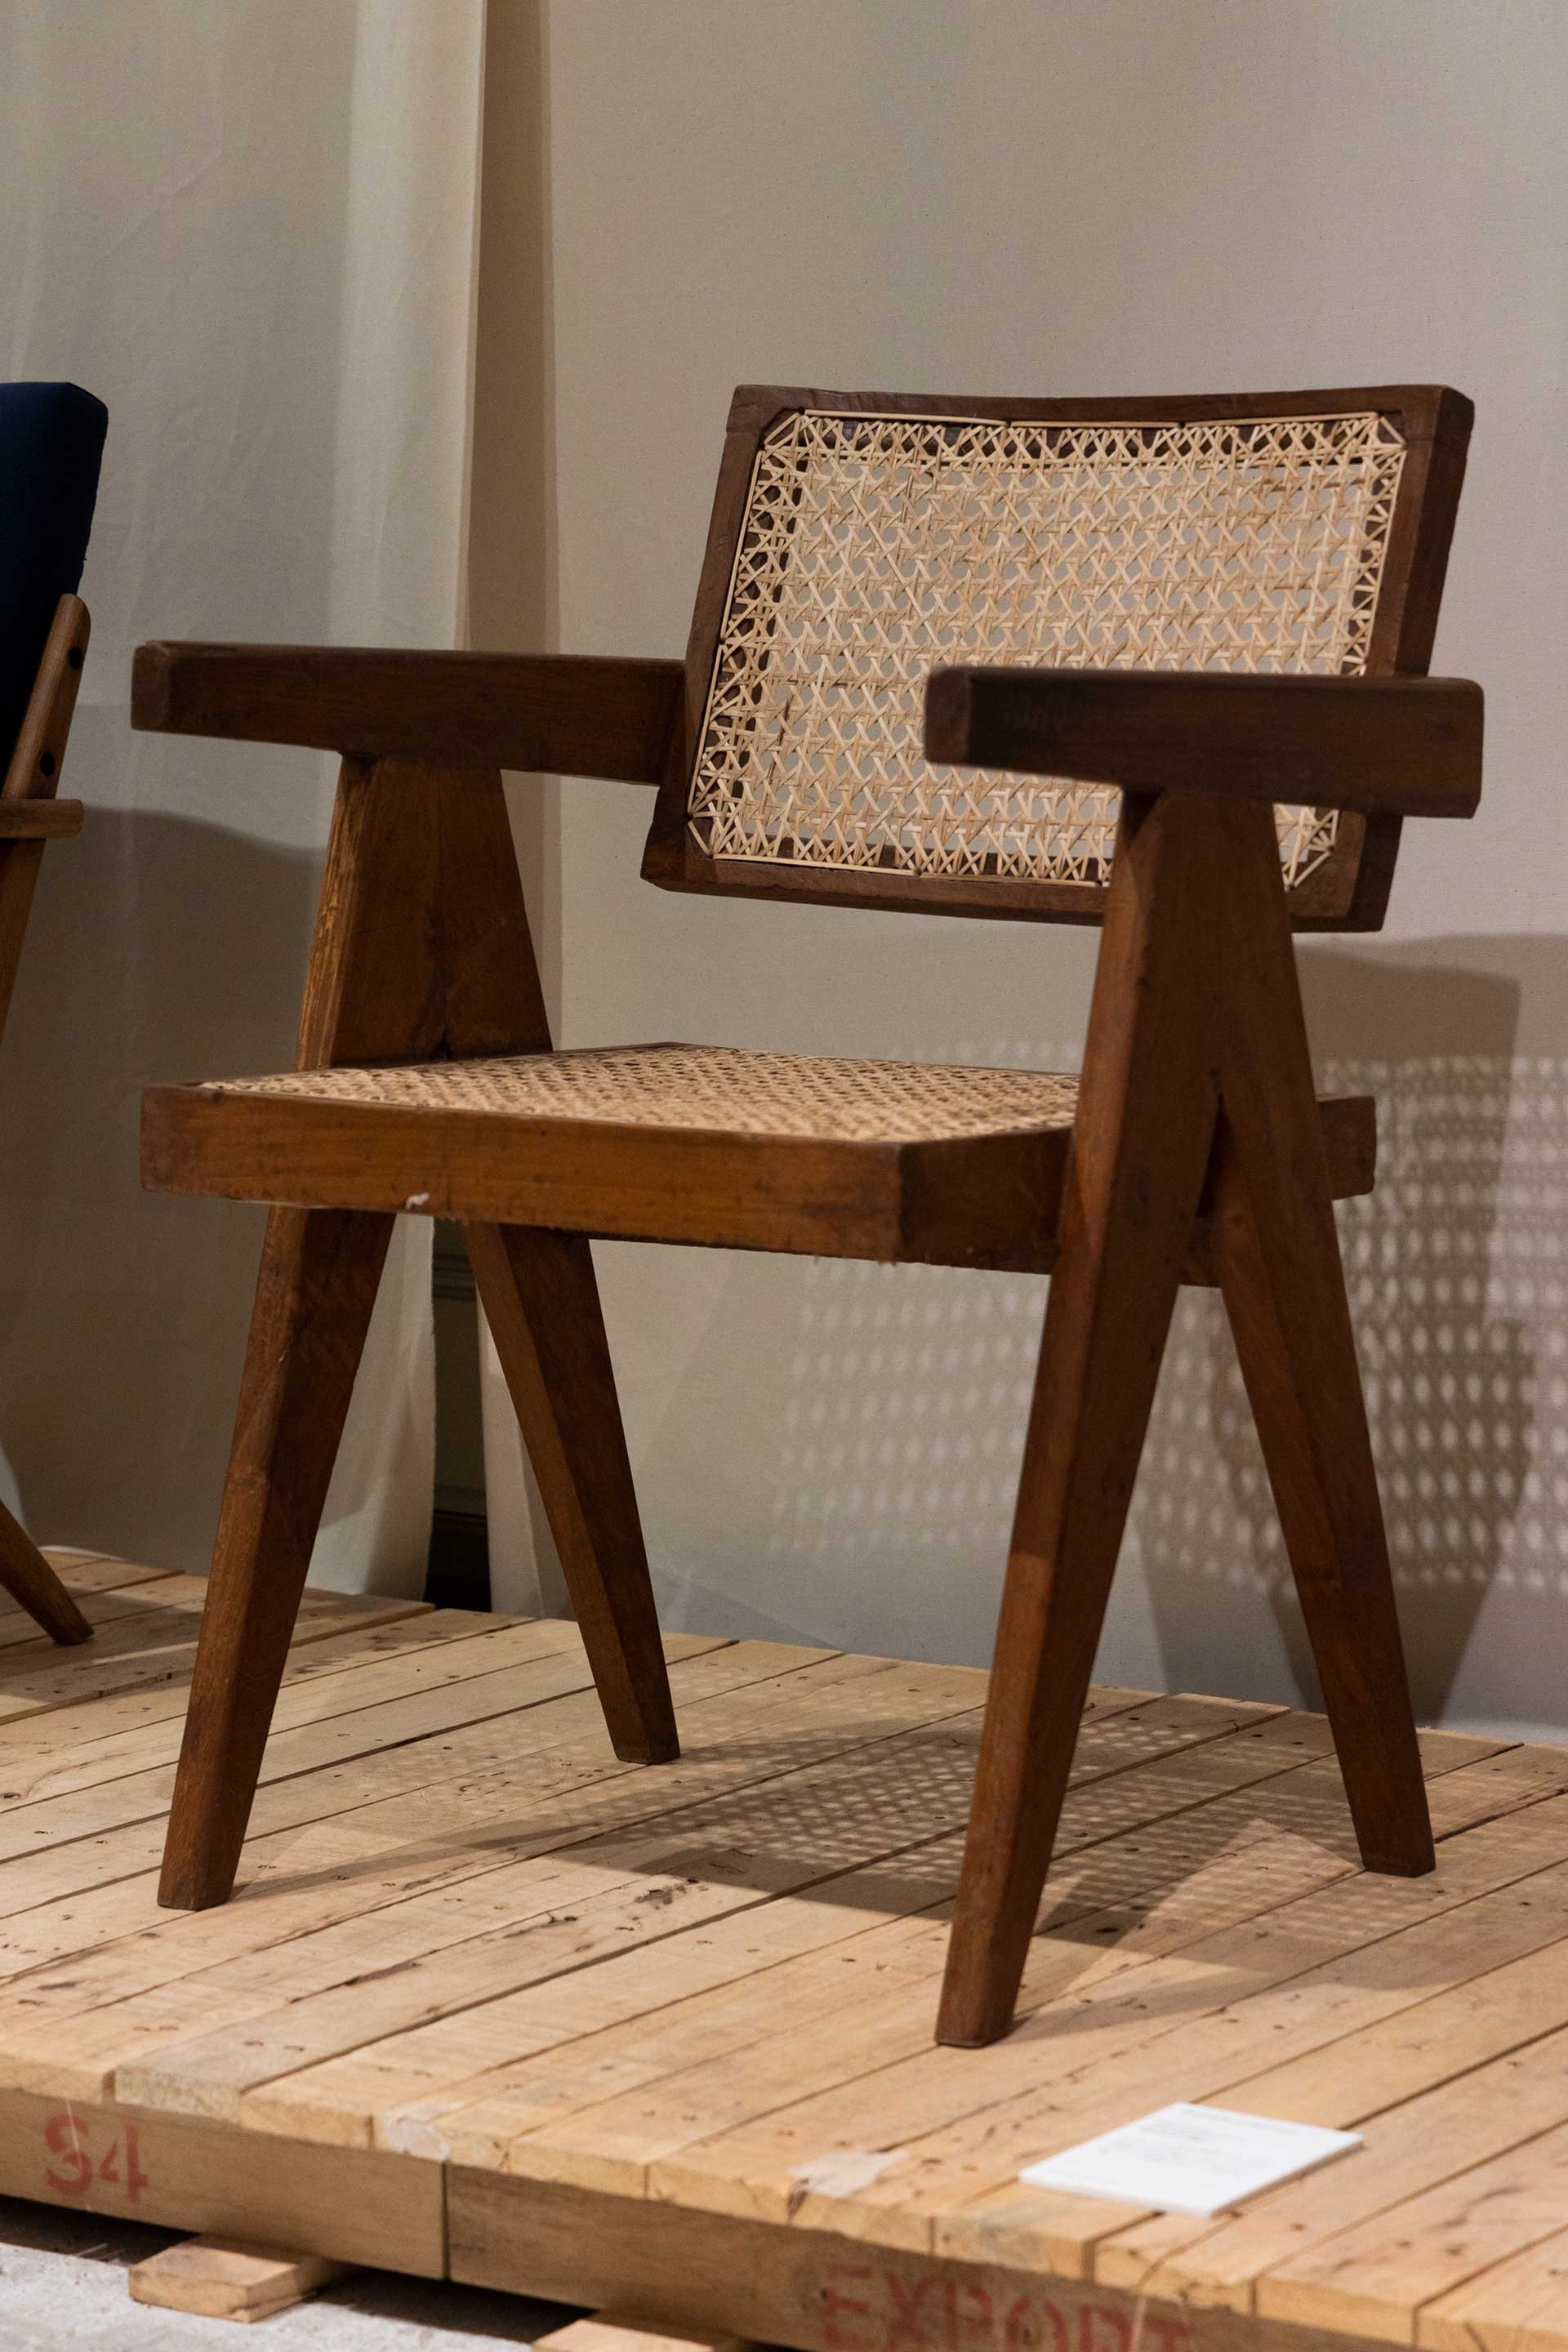 ル・コルビュジェのパートナーであった建築家ピエール・ジャンヌレがデザインしたオフィスチェア“Floating Back Office Chair”。チーク材を用いたVレッグと籐で構成されるアイコニックな１脚。